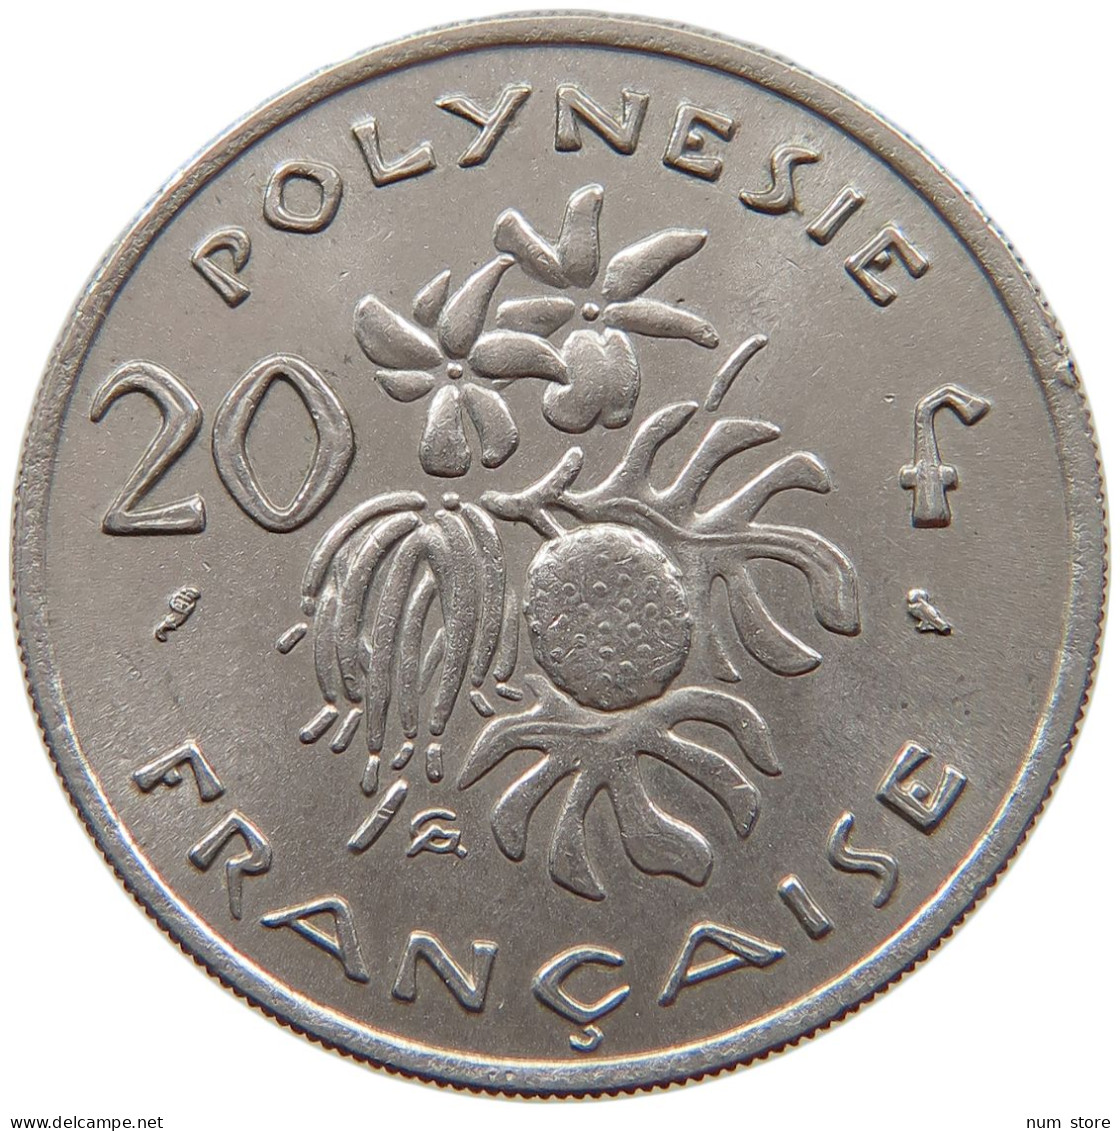 POLYNESIA 20 FRANCS 1967  #c064 0253 - Frans-Polynesië